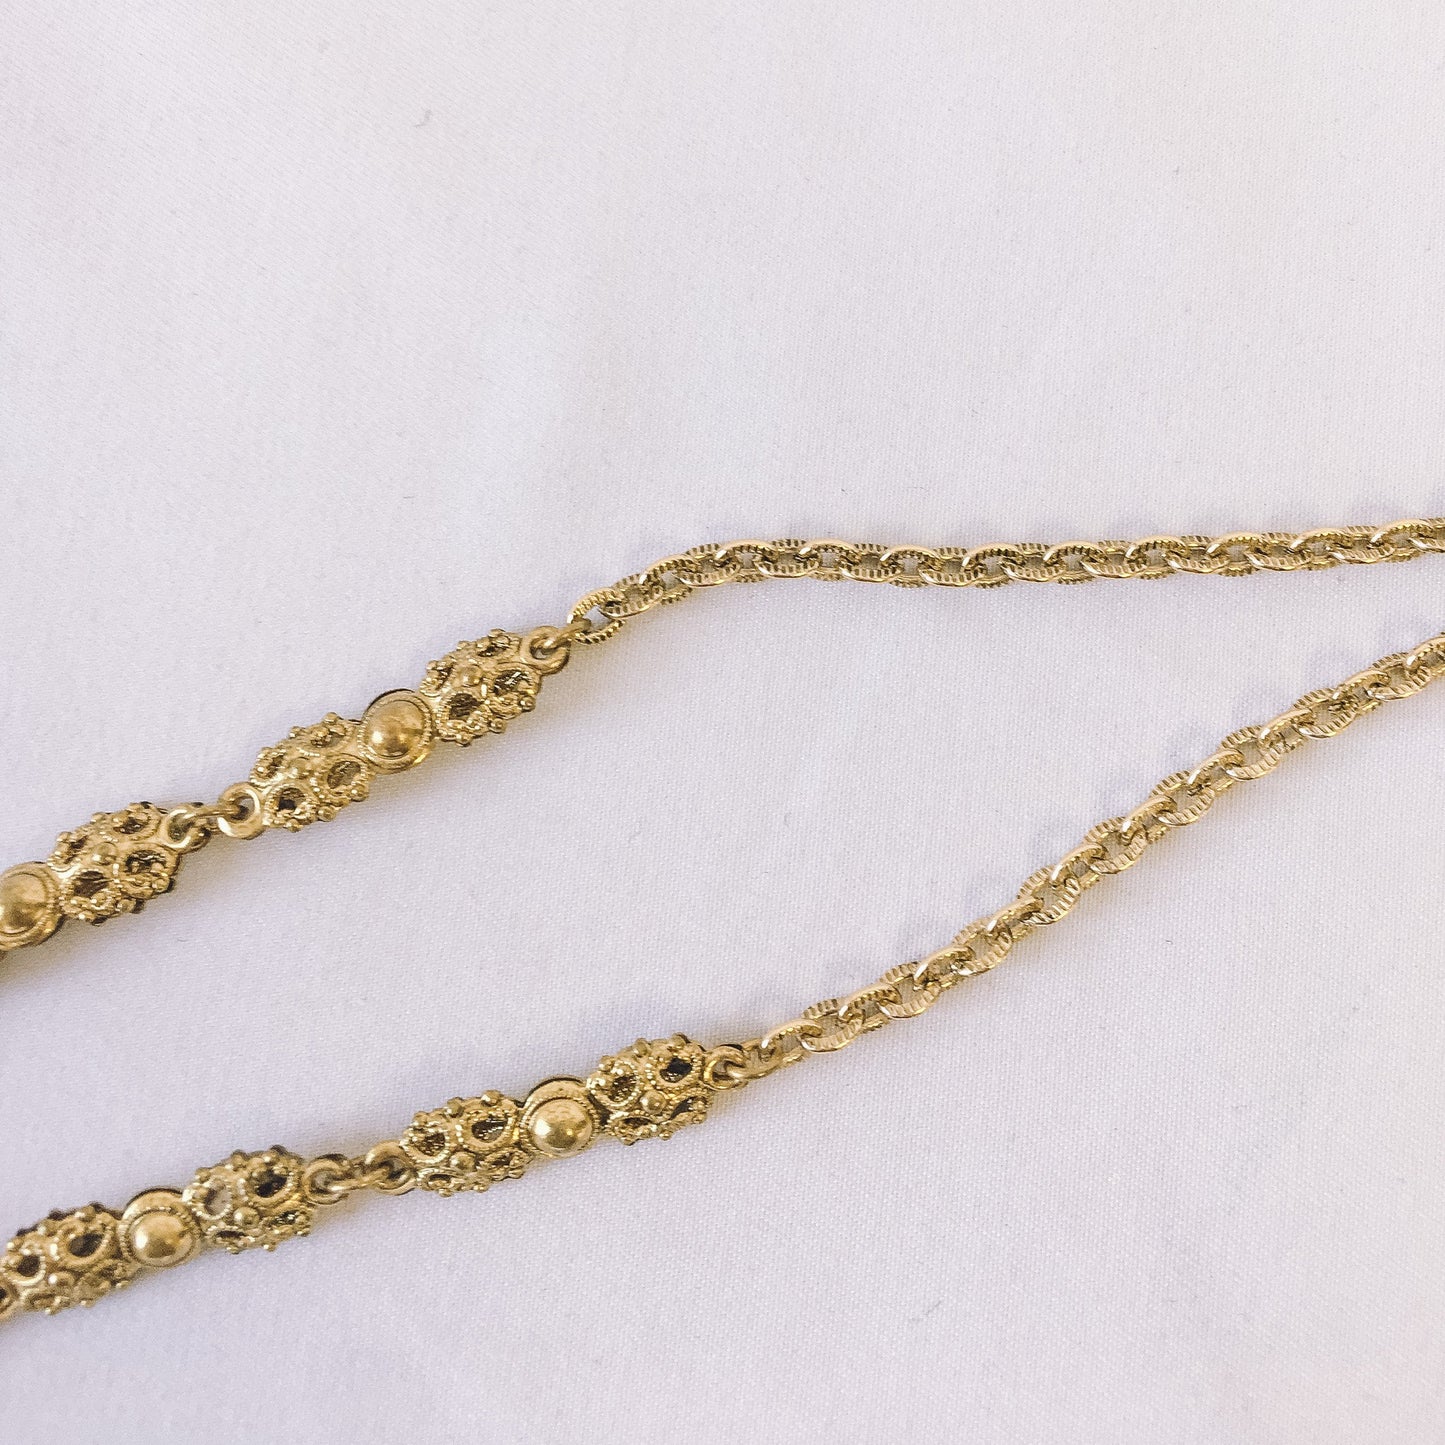 Vintage Brass Filigree Pendant Necklace, Floral Design, Marked Western Germany